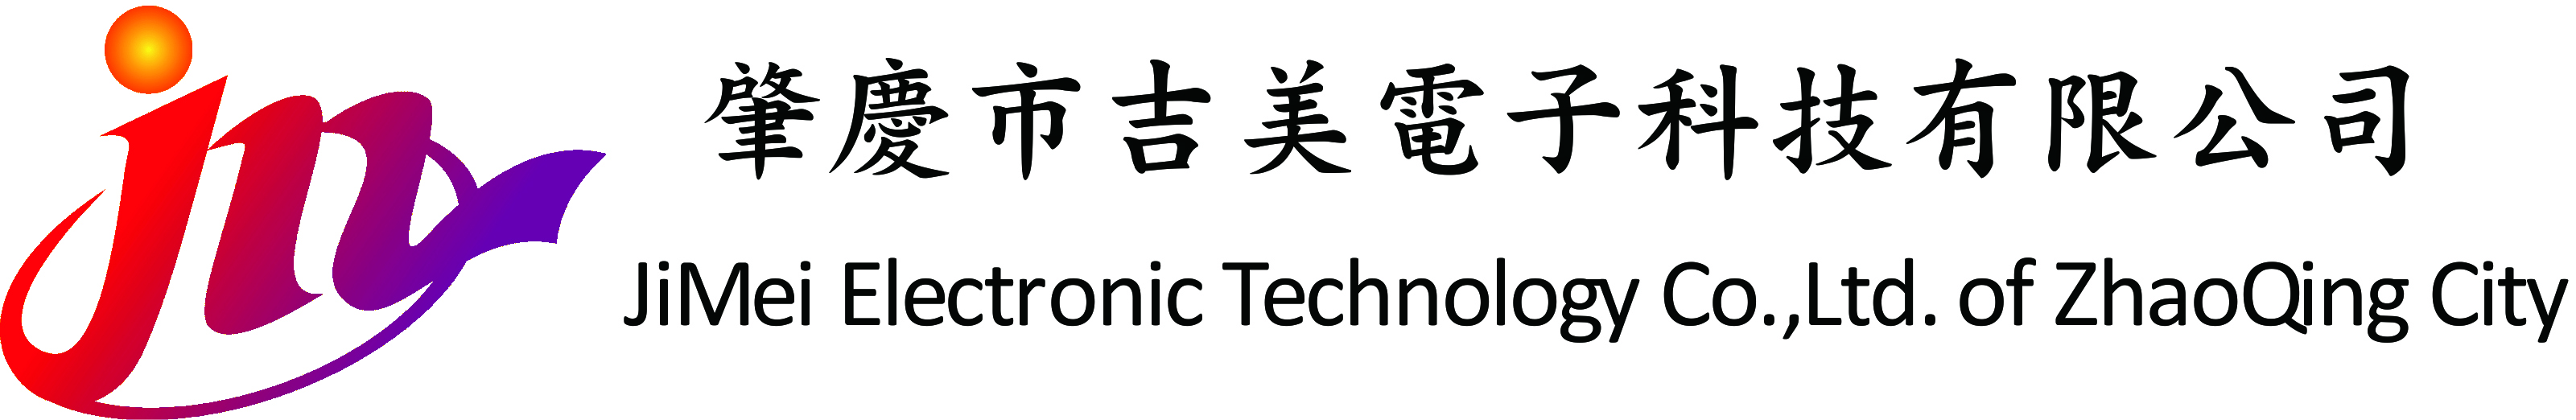 肇慶市吉美電子科技有限公司